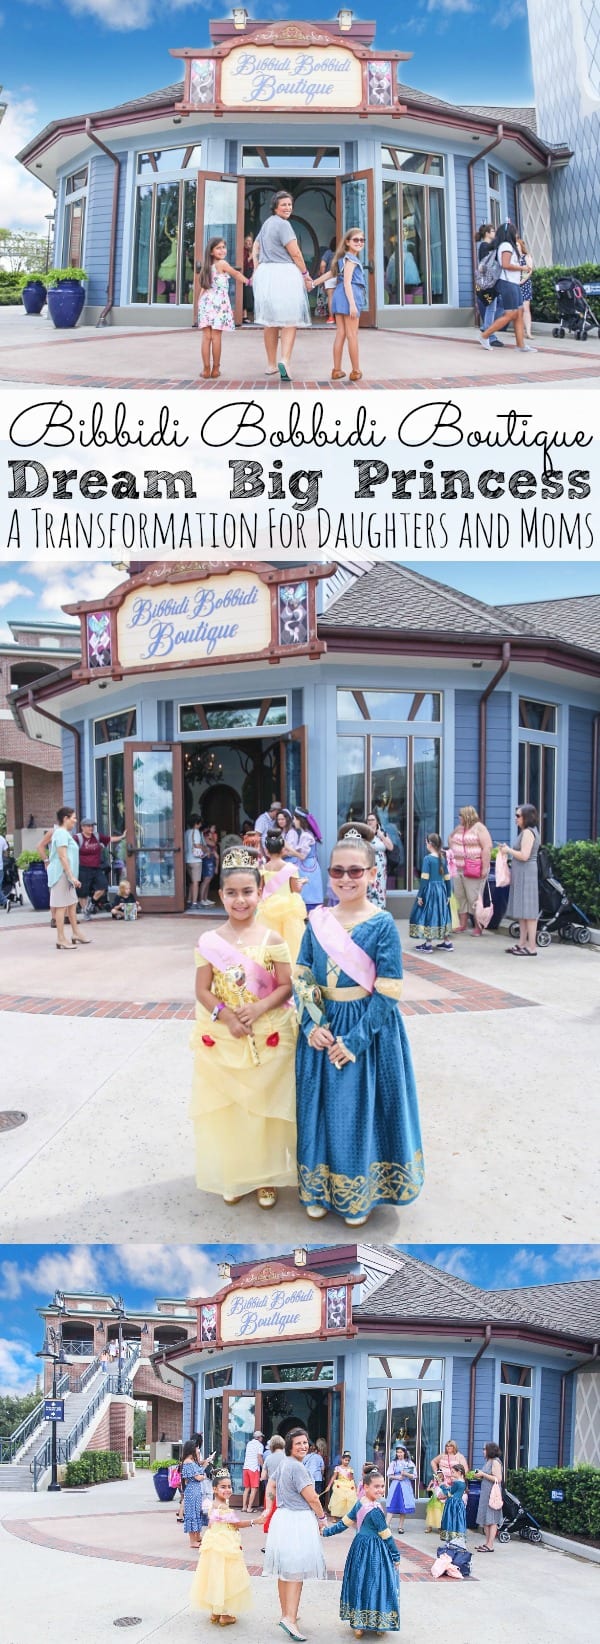 Bibbidi Bobbidi Boutique Dream Big Princess A Transformation for Daughters and Moms.